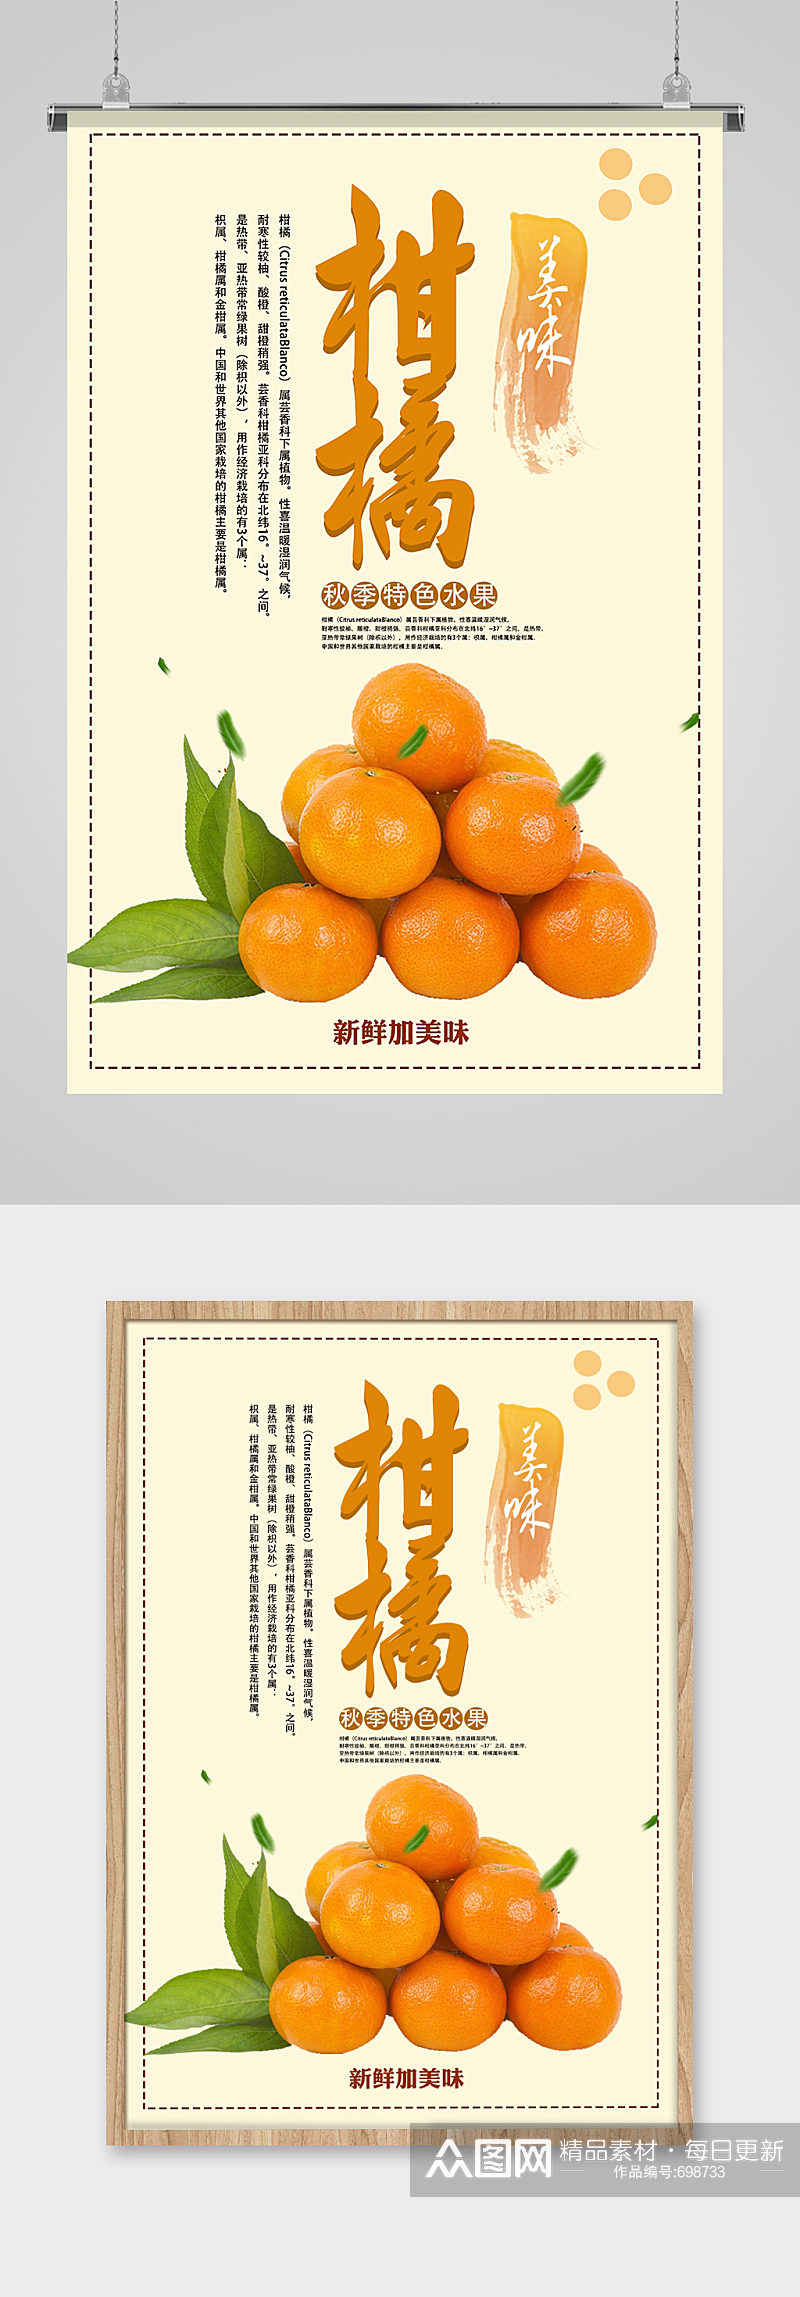 美味柑橘水果海报素材